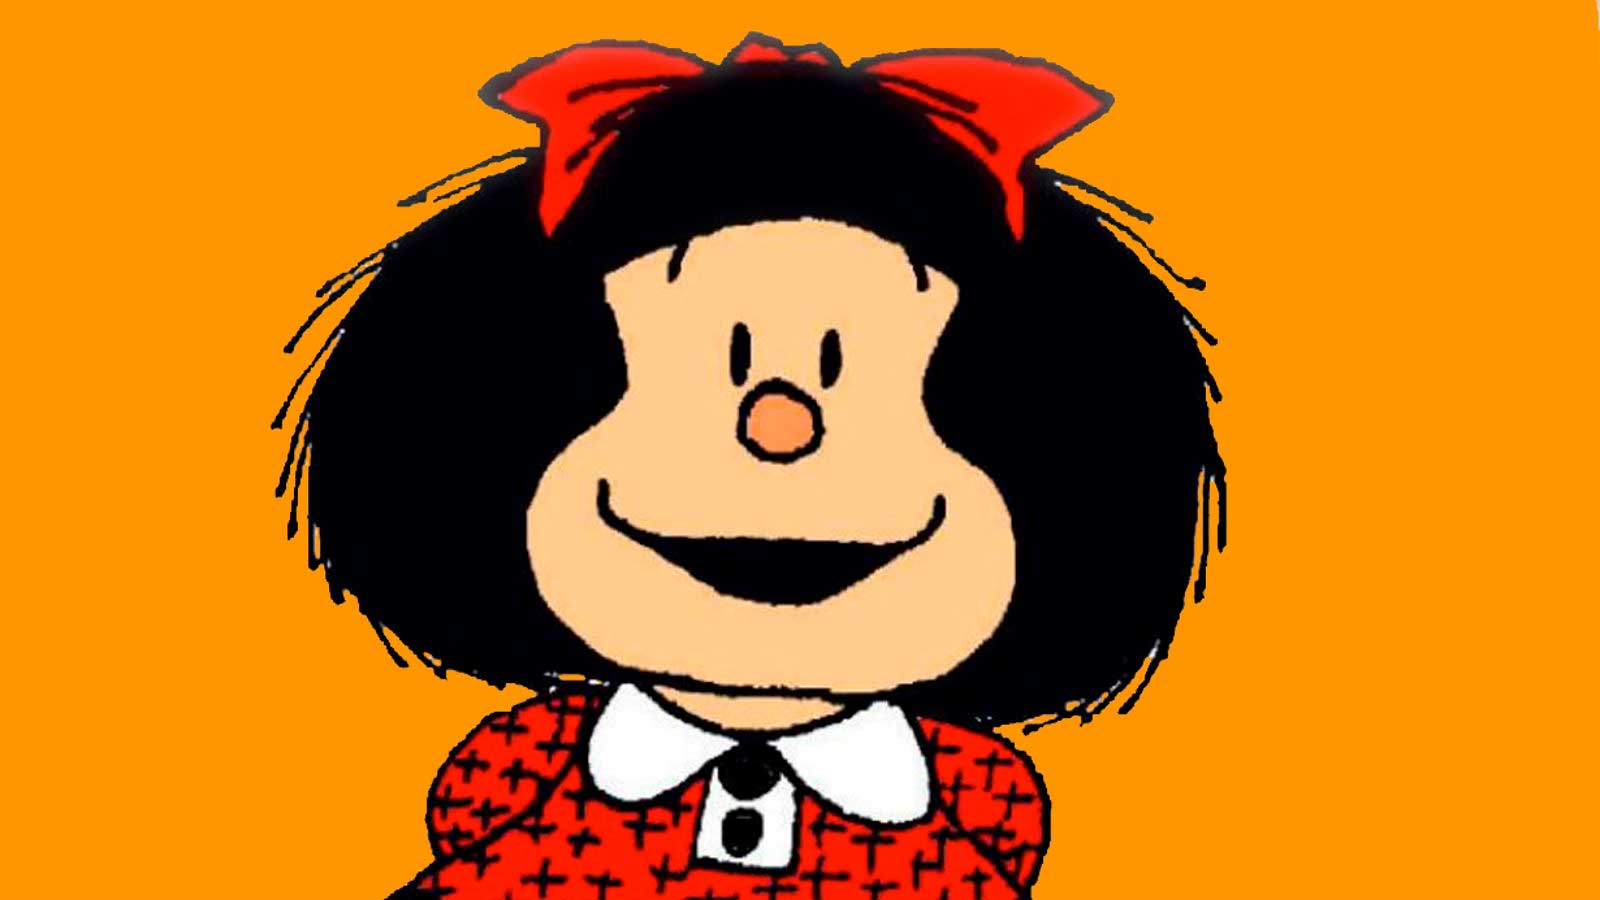 La política de Mafalda, el nihilismo hecho historieta